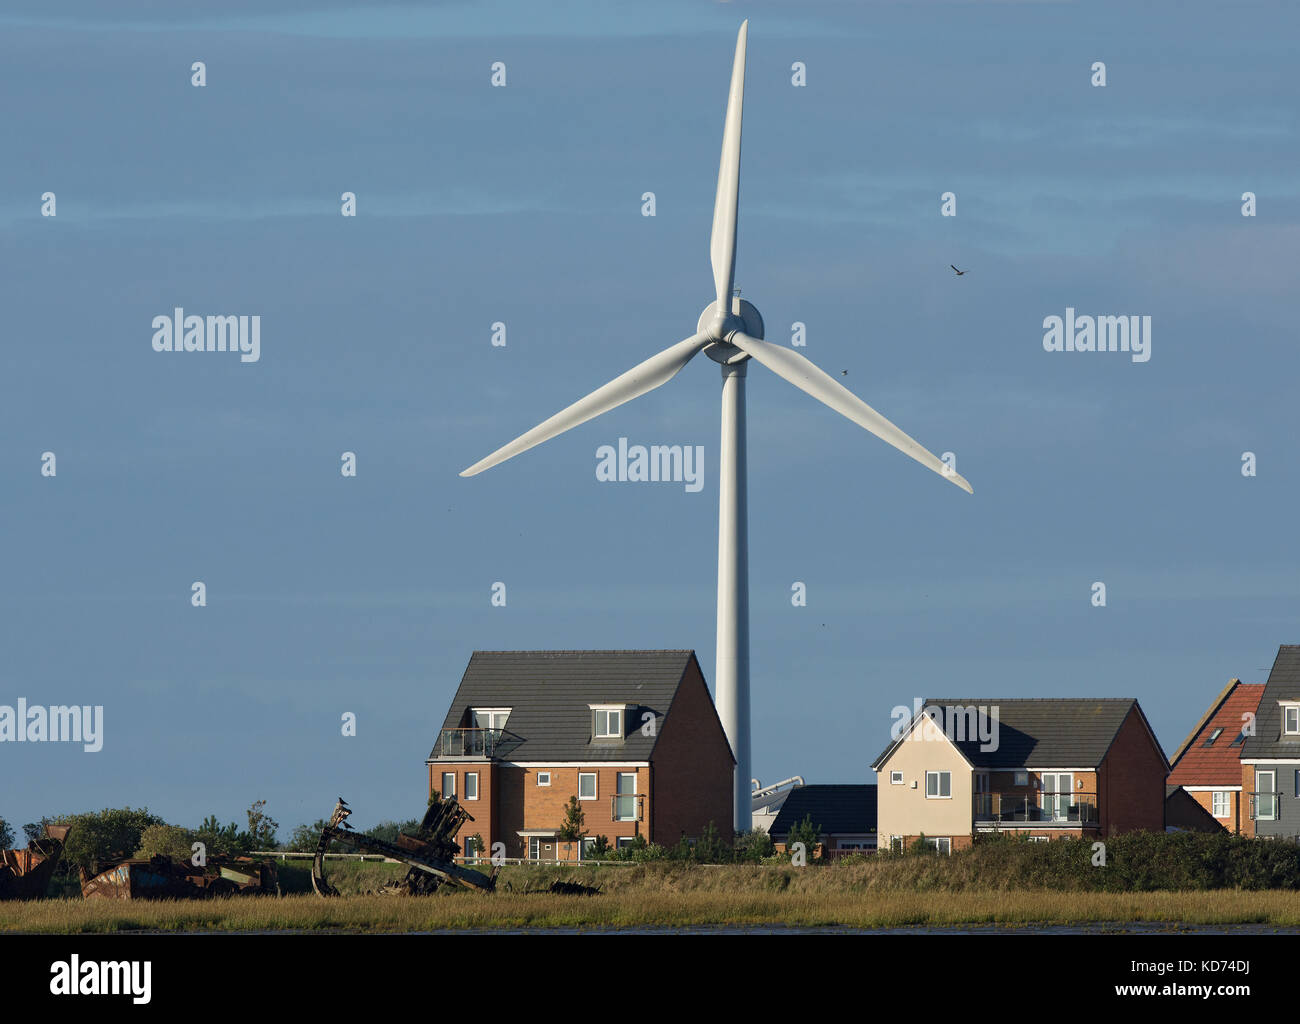 Newly built house with large wind turbine behind, Lancashire, UK Stock Photo